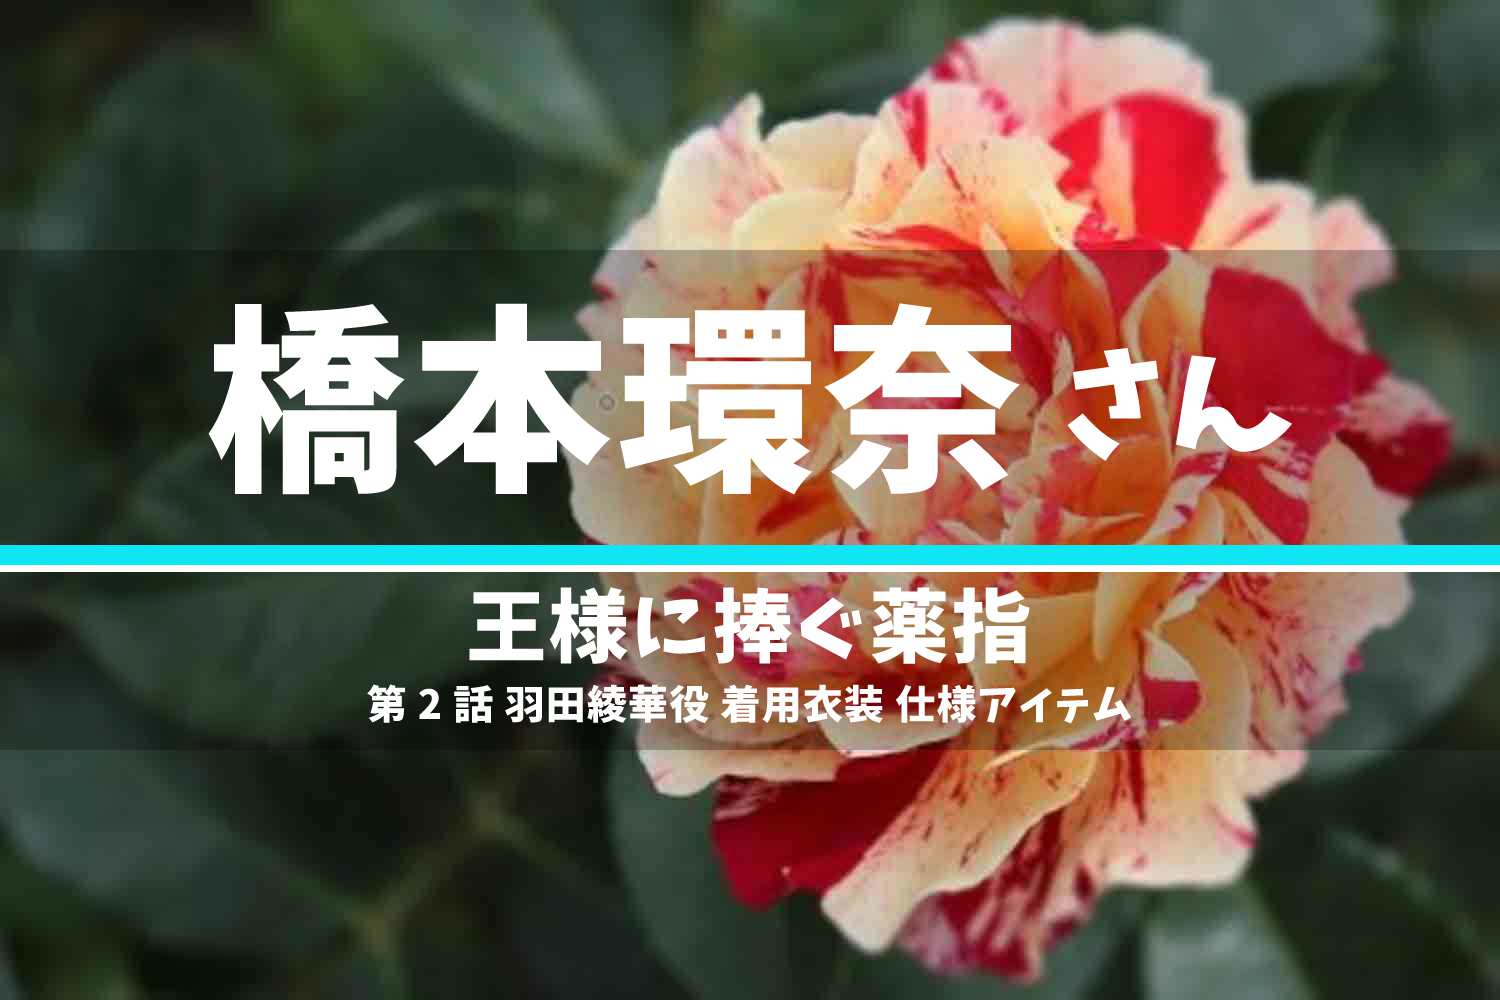 王様に捧ぐ薬指 橋本環奈さん テレビドラマ 衣装 2023年4月25日放送